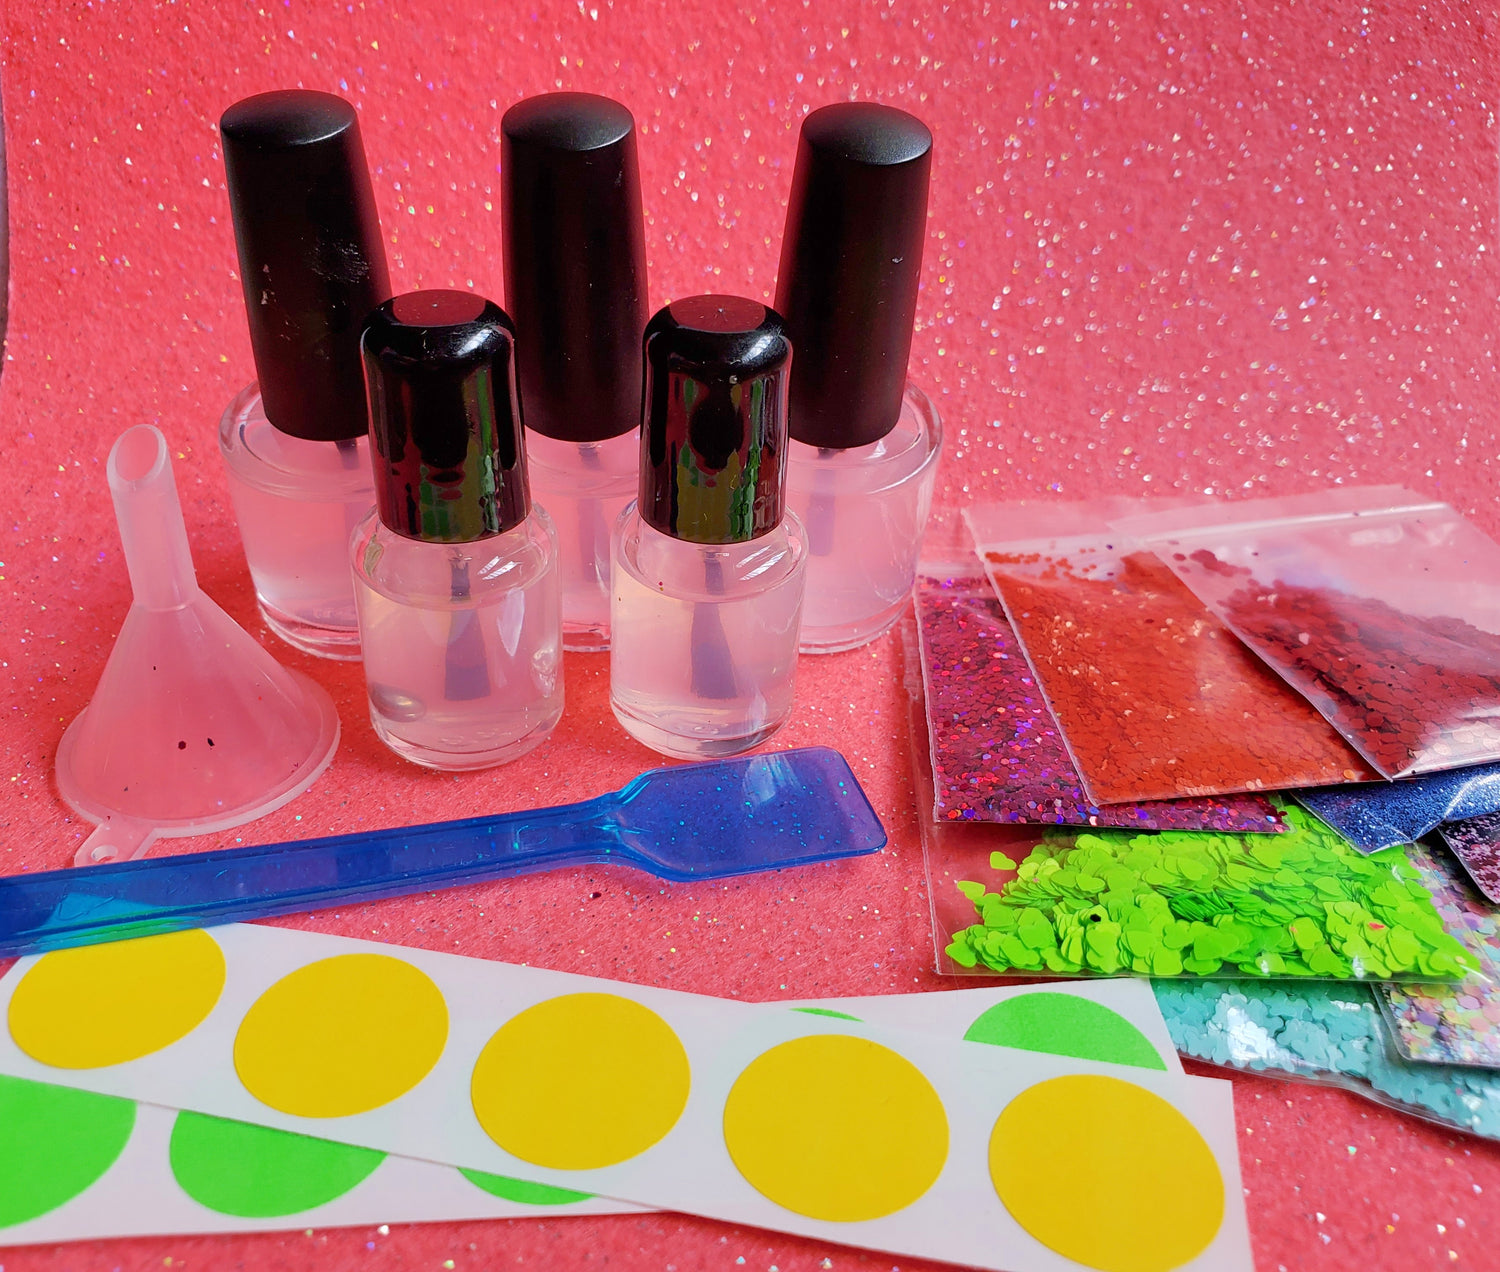 buy + diy: shimmer and shine diy nail polish kit tutorial - see kate sew